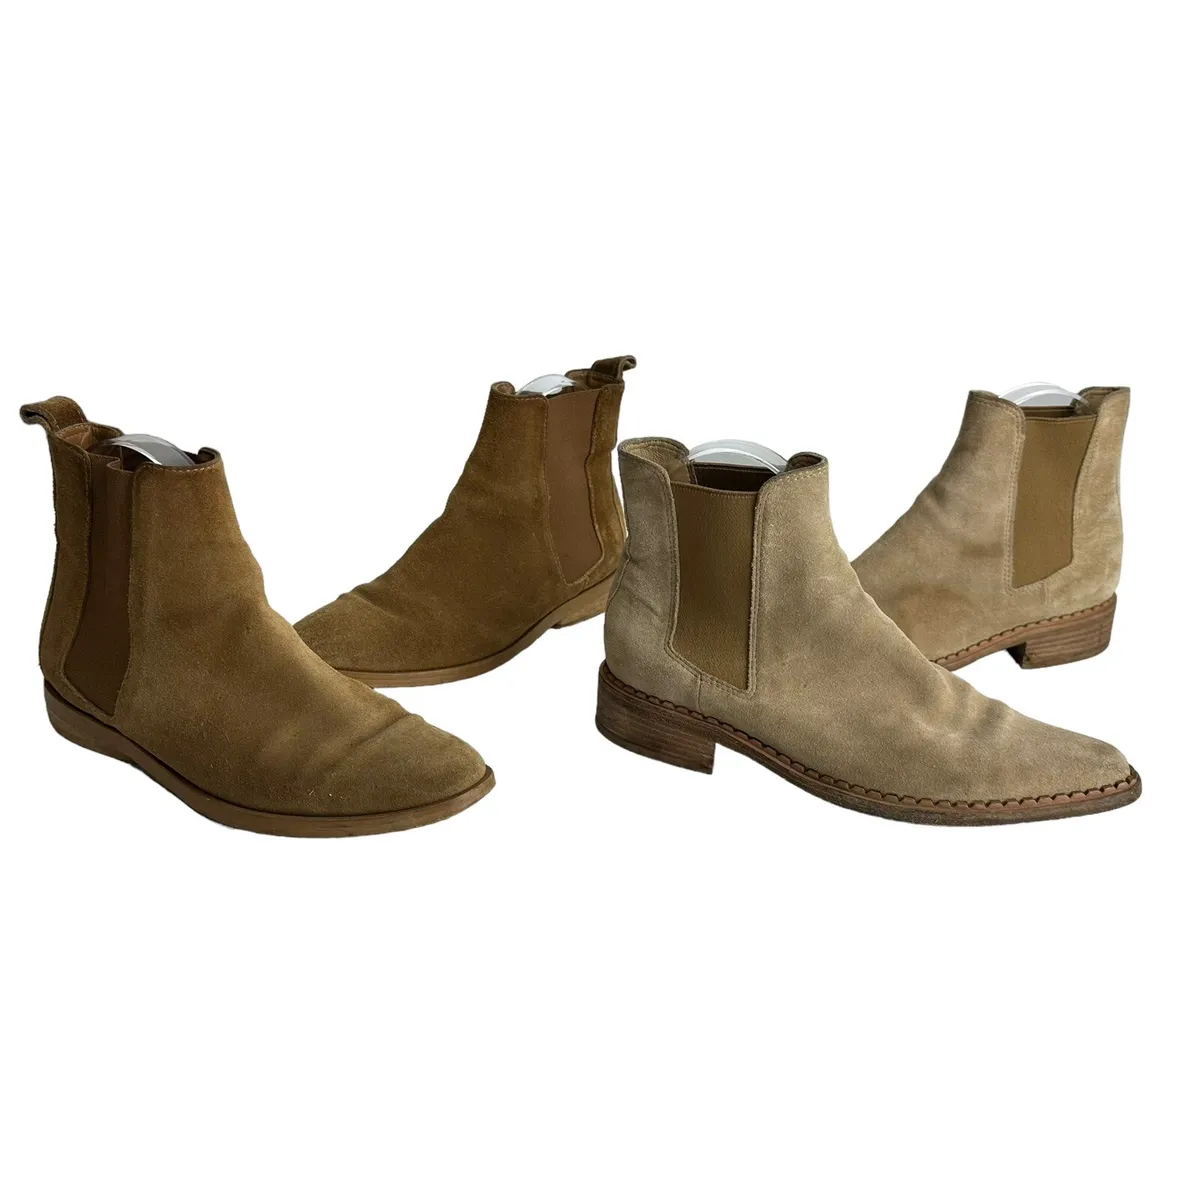 gammelklog porter Forblive vince brown suede chelsea boots Size 6 | eBay